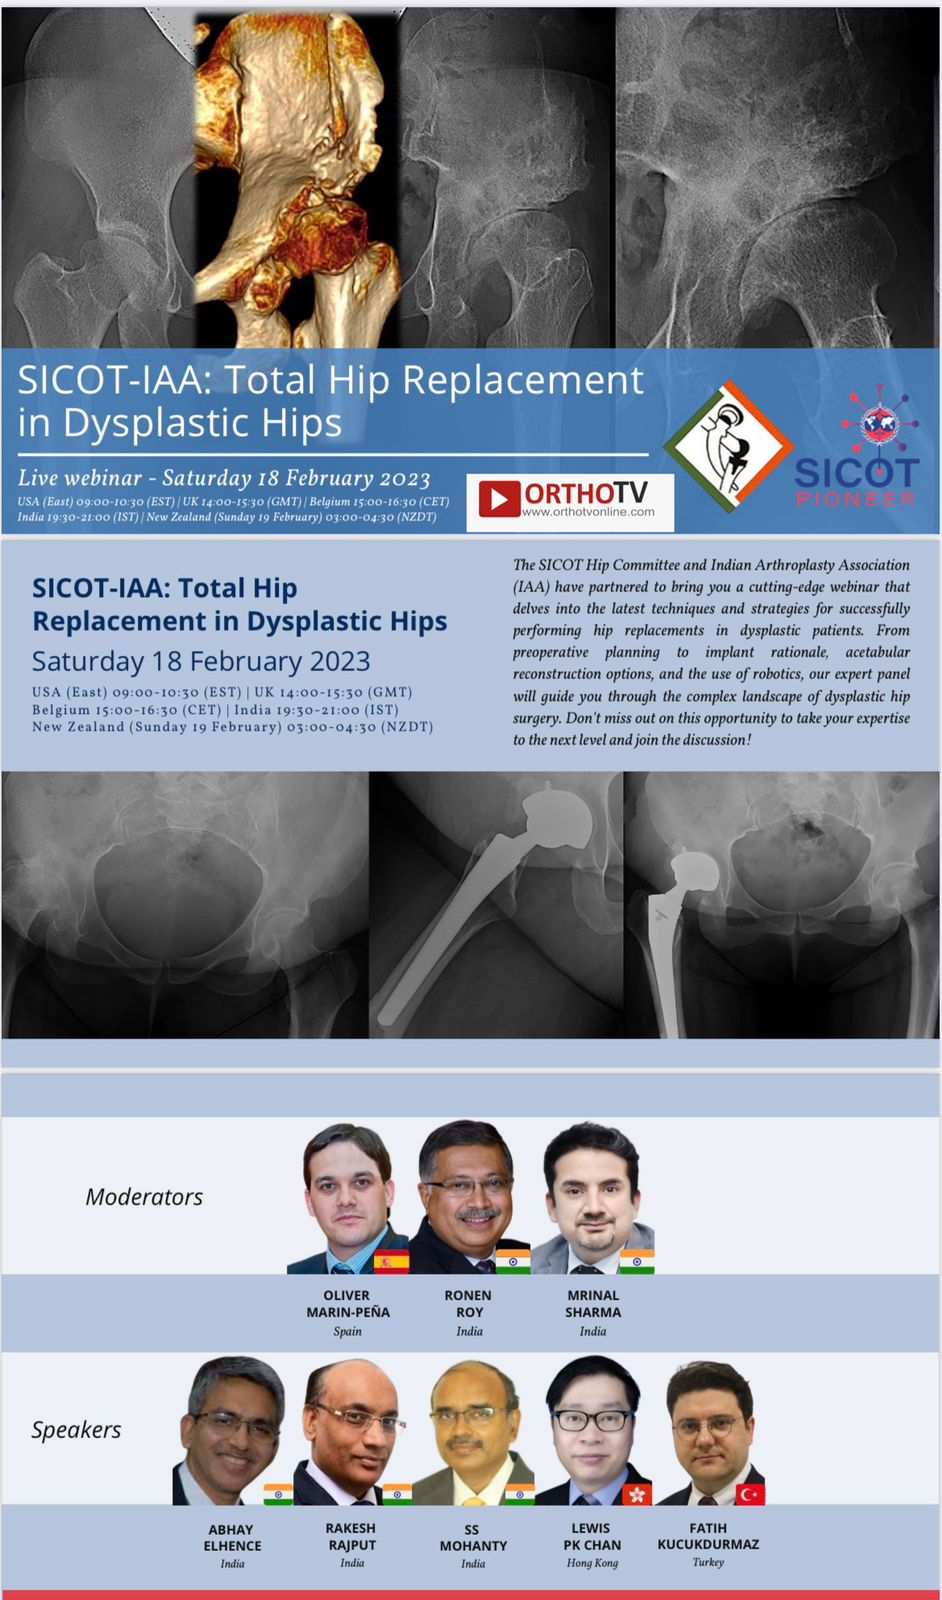 SICOT-IAA: Total Hip Replacement in Dysplastic Hips: Abhay elhence,Rakesh rajput